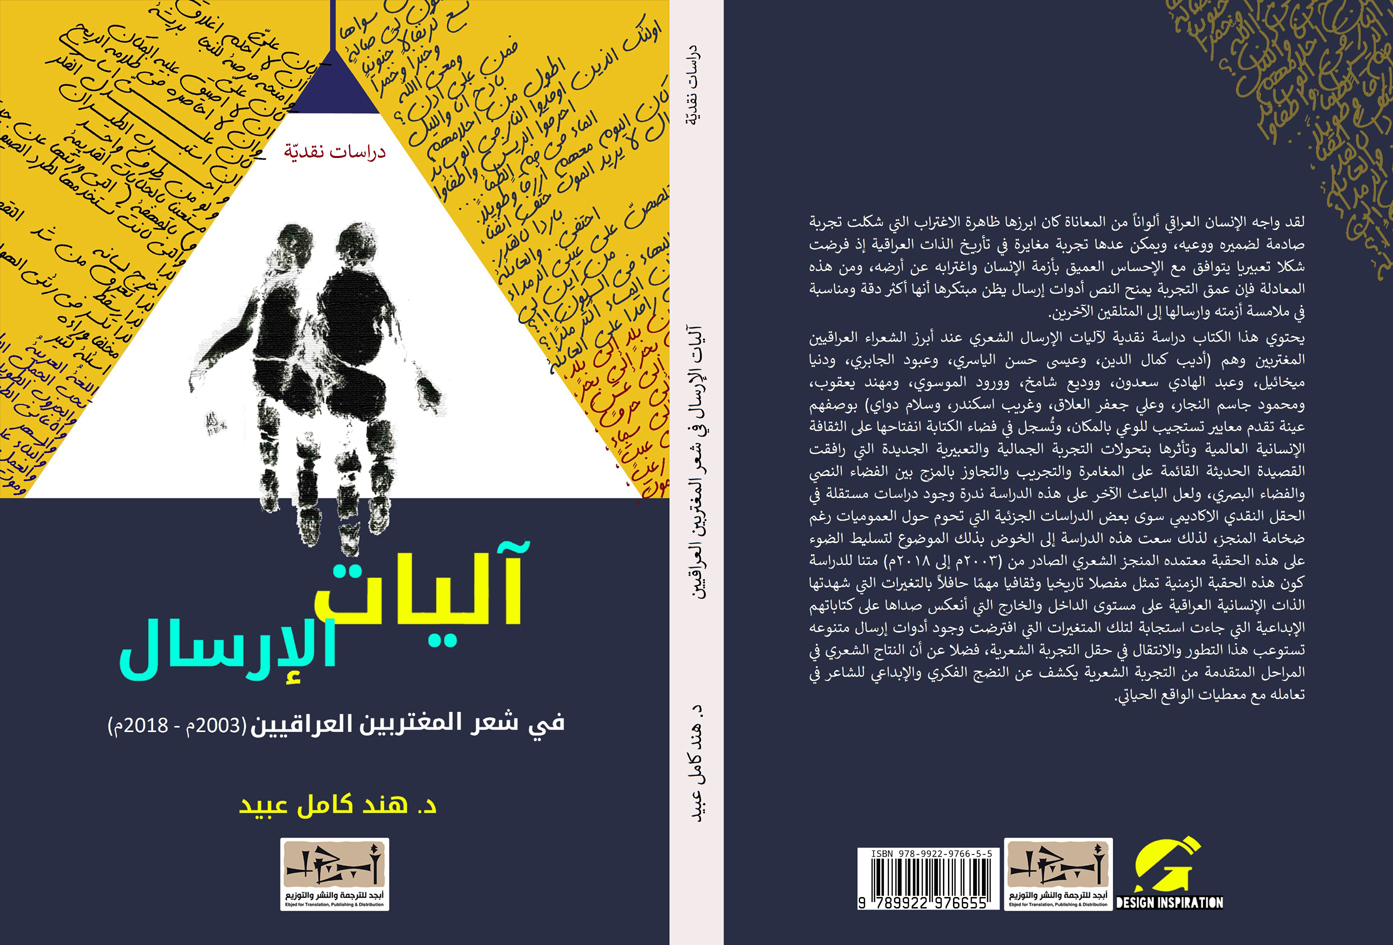 اسم الكتاب: آليات الارسال – في شعر المغتربين العراقيين تأليف: د. هند كامل عبيد 